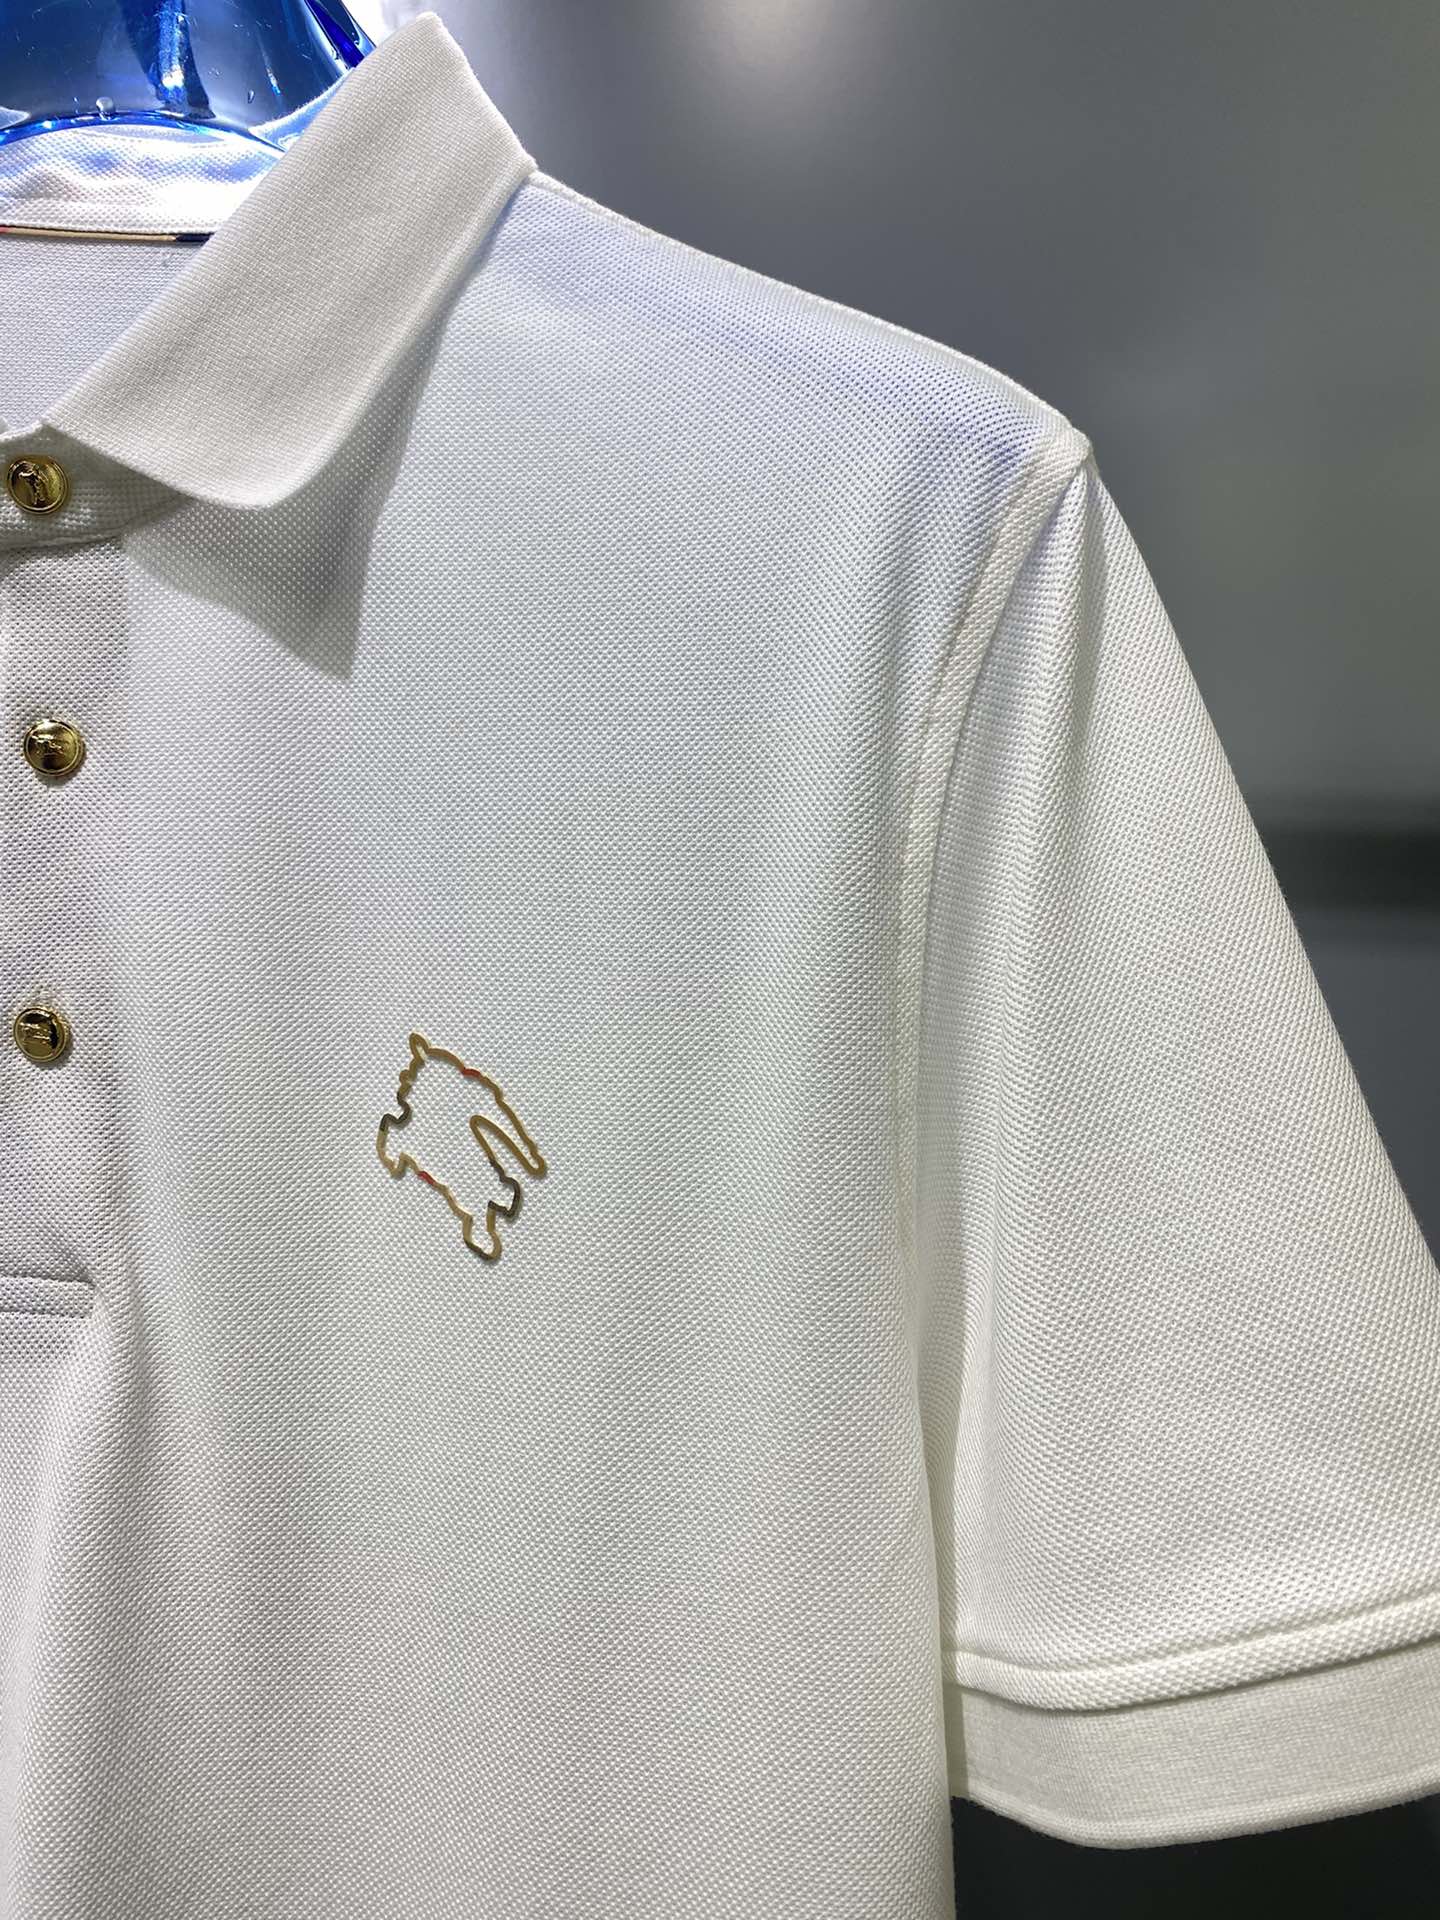 #bu夏季新款短袖T恤Polo客供定制珠地面料简单时尚款超级好看！简单大方的款式！满满的高级感四季可穿颜